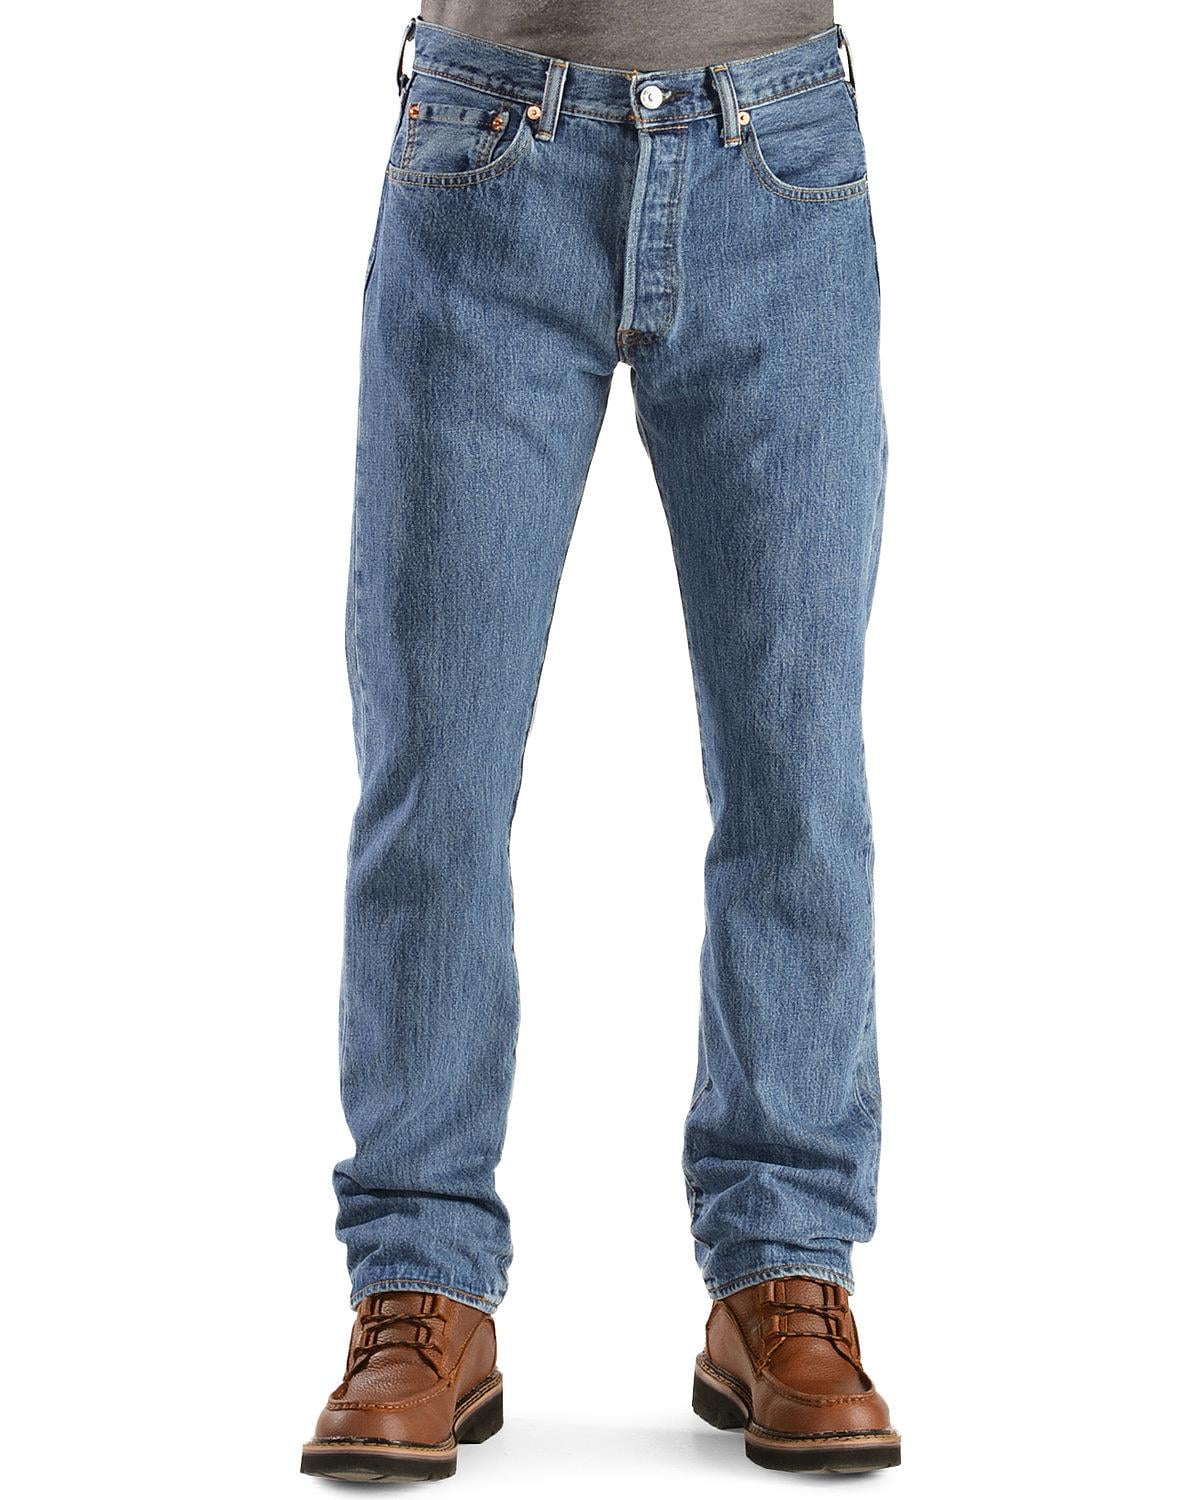 Levis Mens 501 Original Fit Jeans Regular 38W x 34L Medium